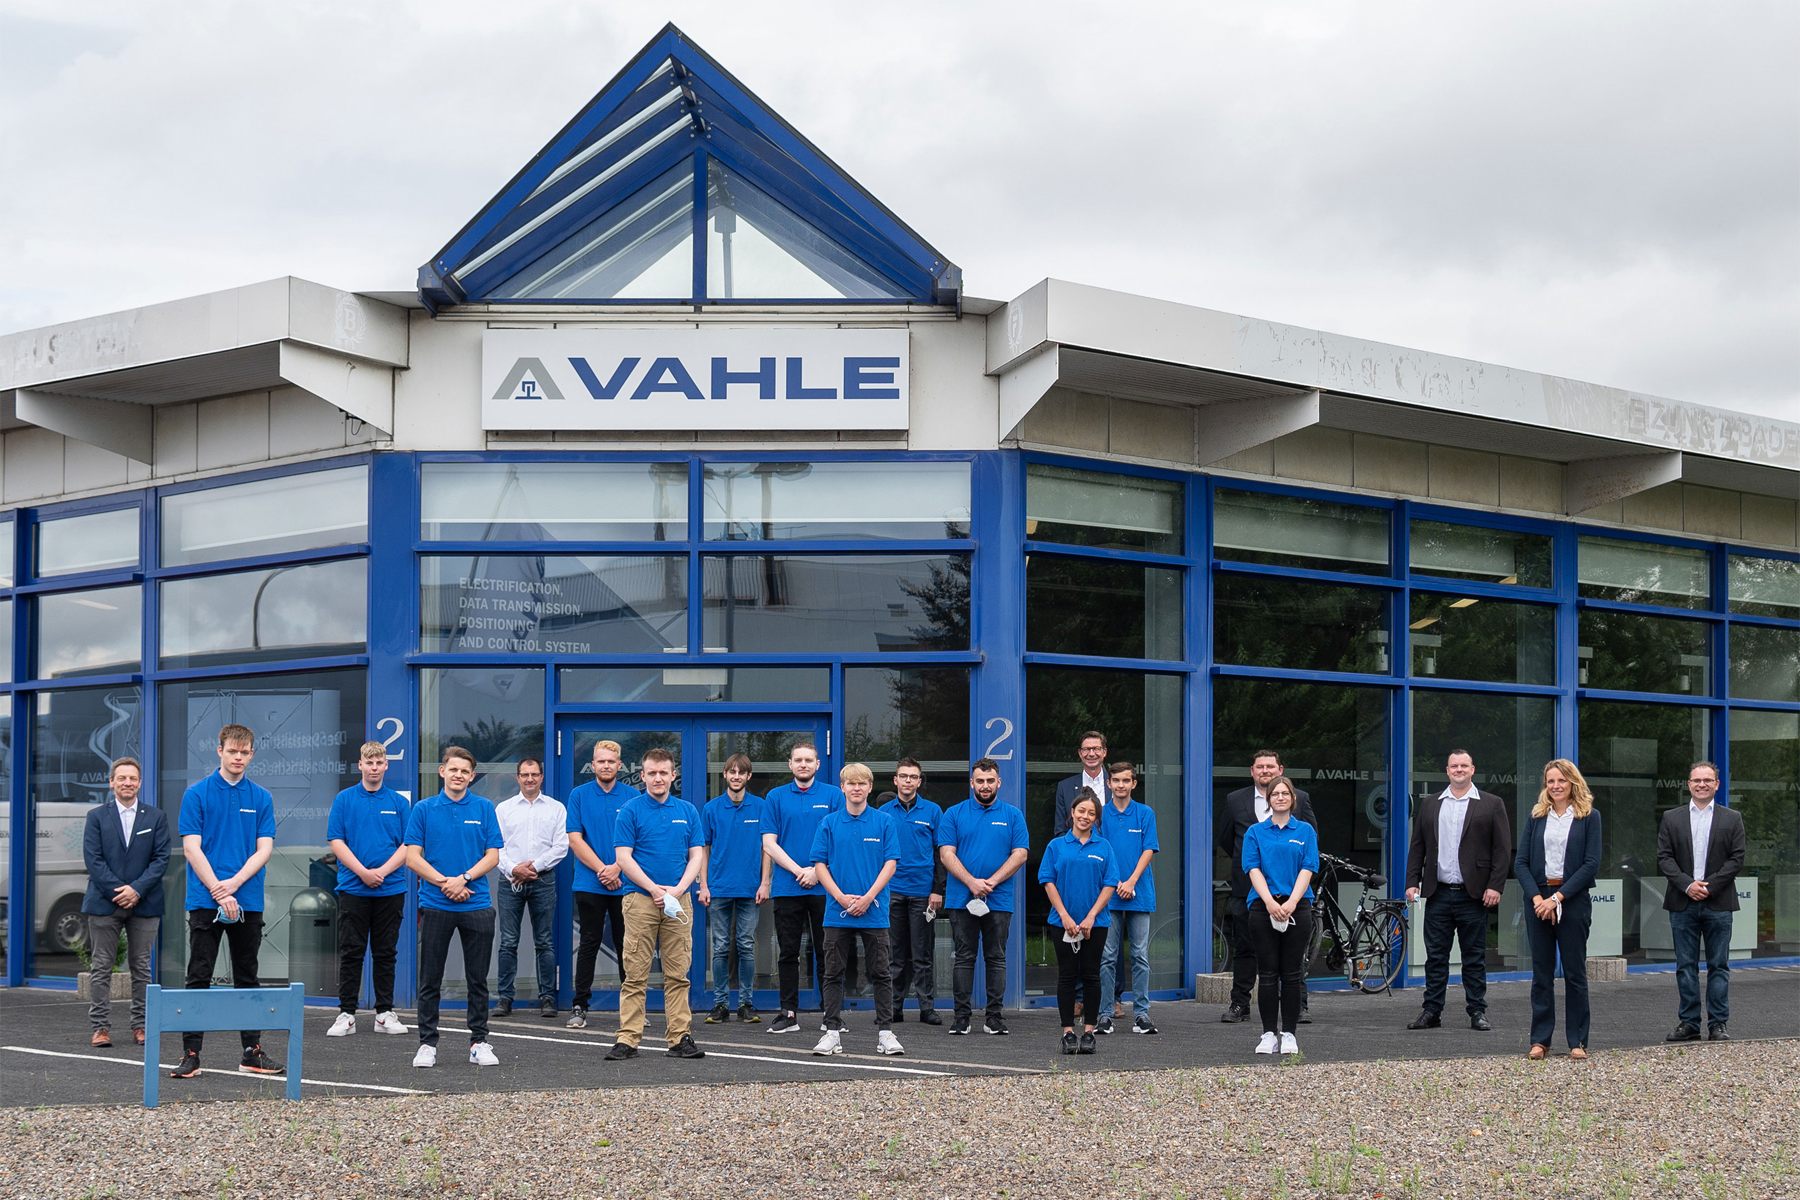 13 Auszubildende starteten heute bei der Paul Vahle GmbH & Co. KG in ihr Berufsleben. (Foto: VAHLE)